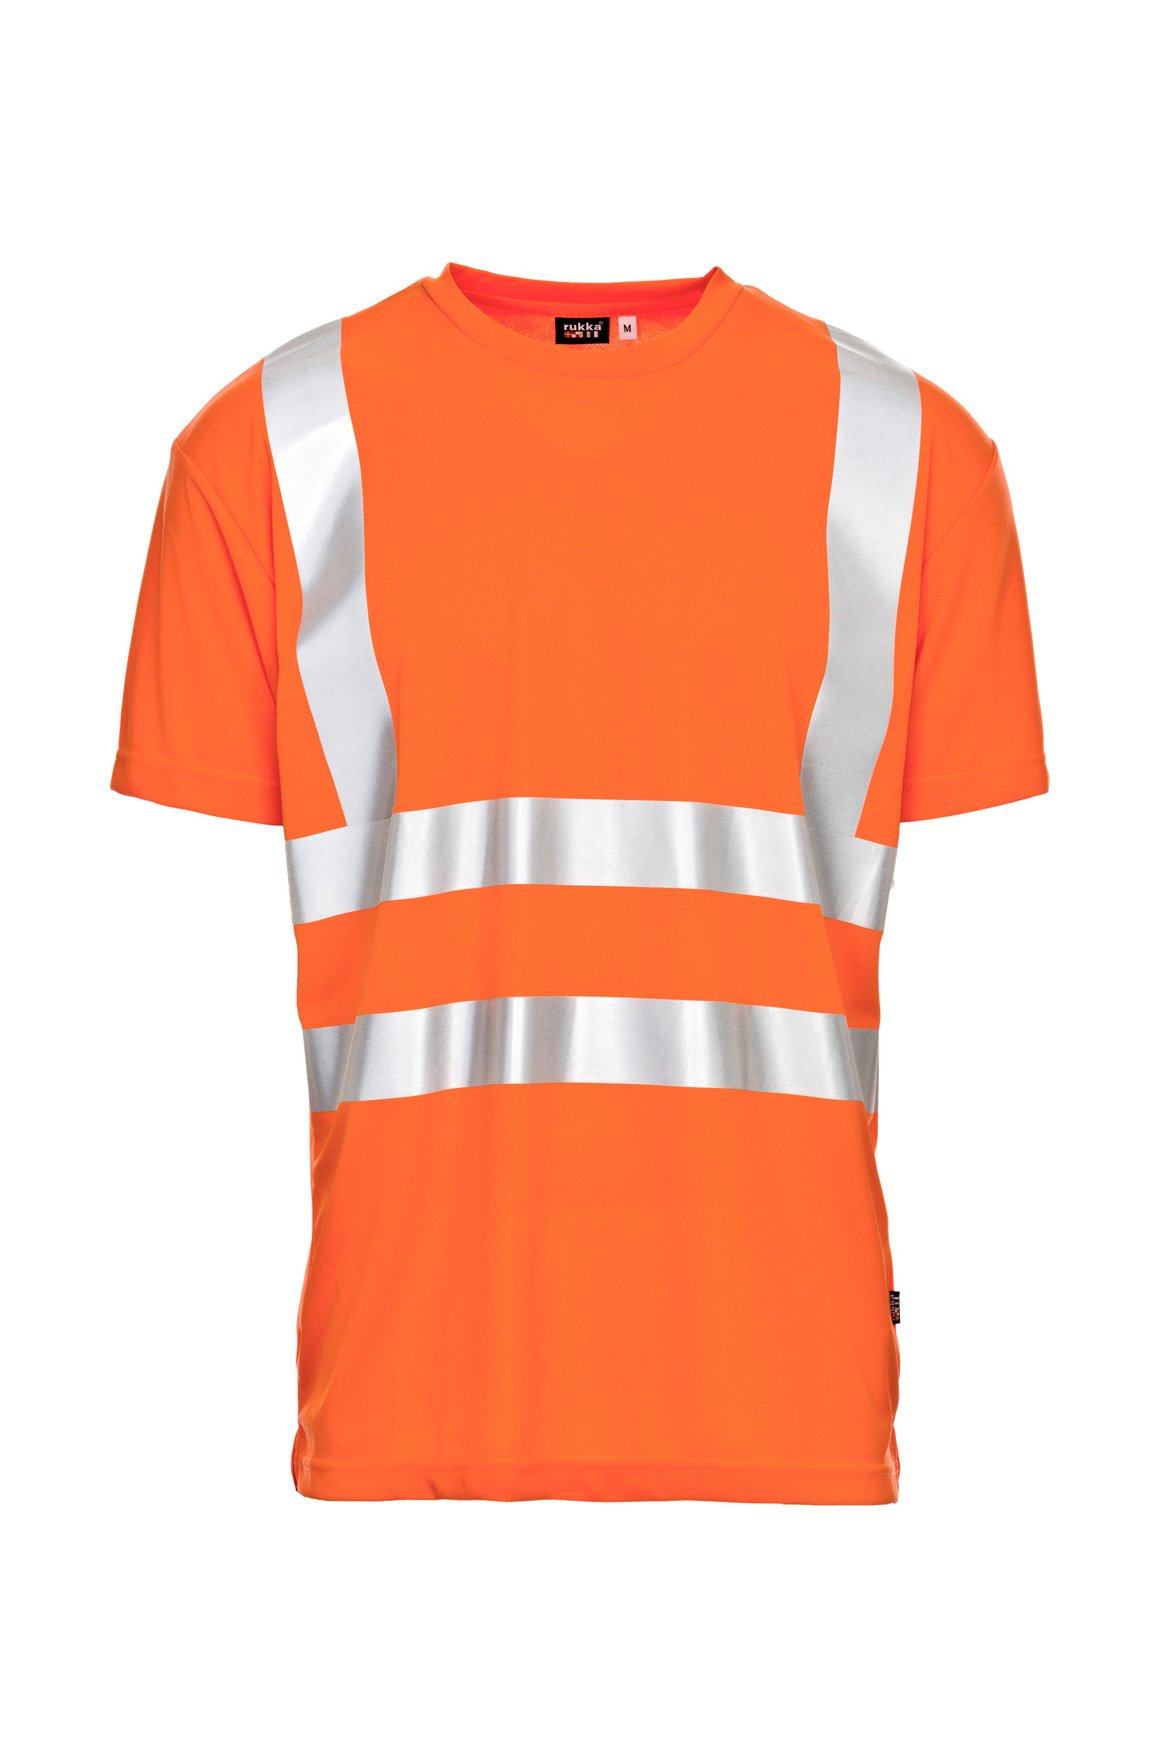 Warnschutz-T-Shirt, fluorescent orange, ISO 20471 Kl. 2